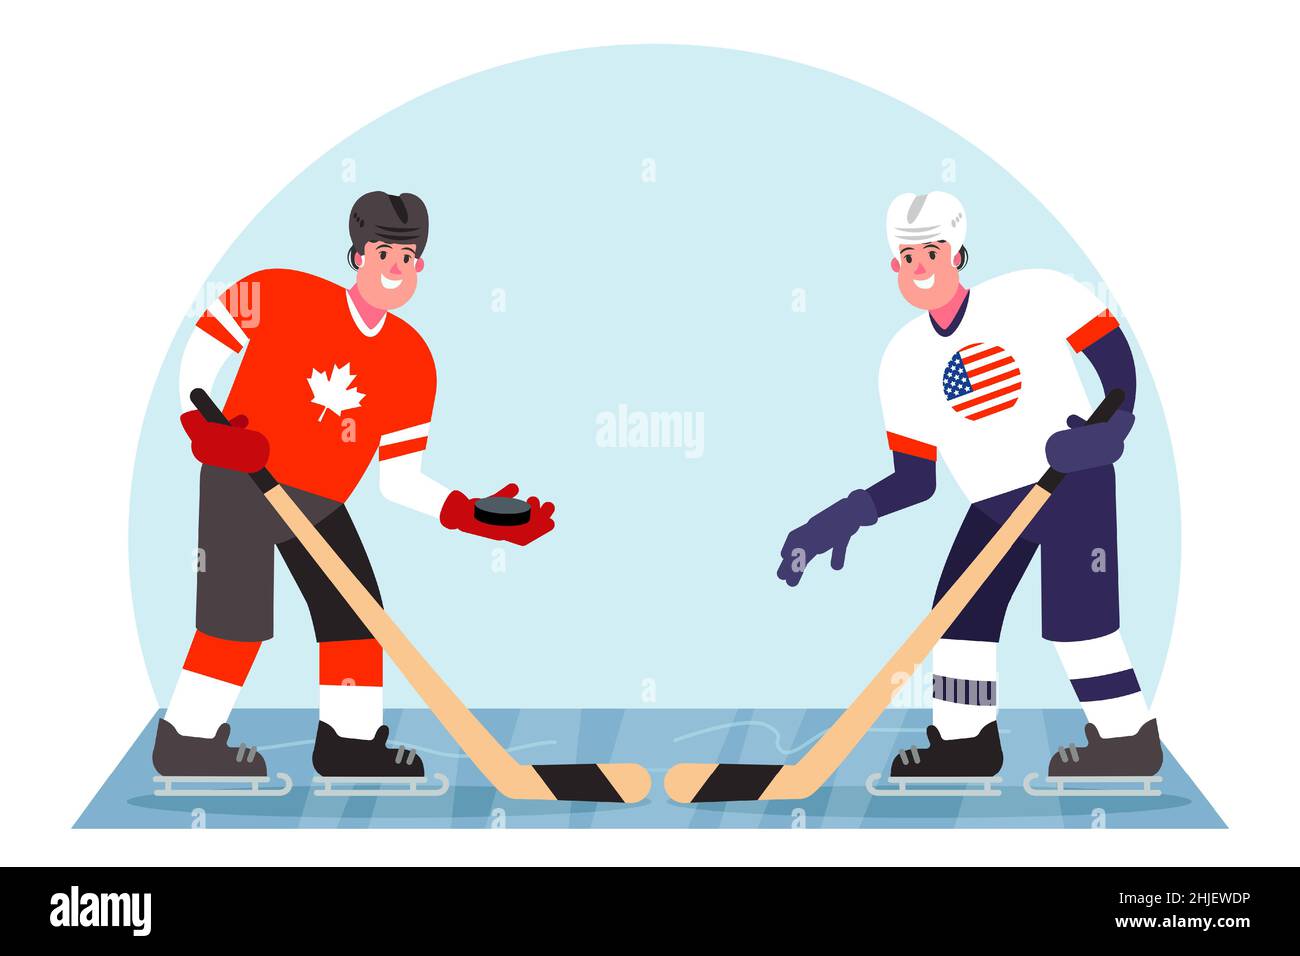 Eishockeyspieler. Wettbewerb zwischen Kanada und den USA. Vektorgrafik in einem flachen Stil. Stock Vektor